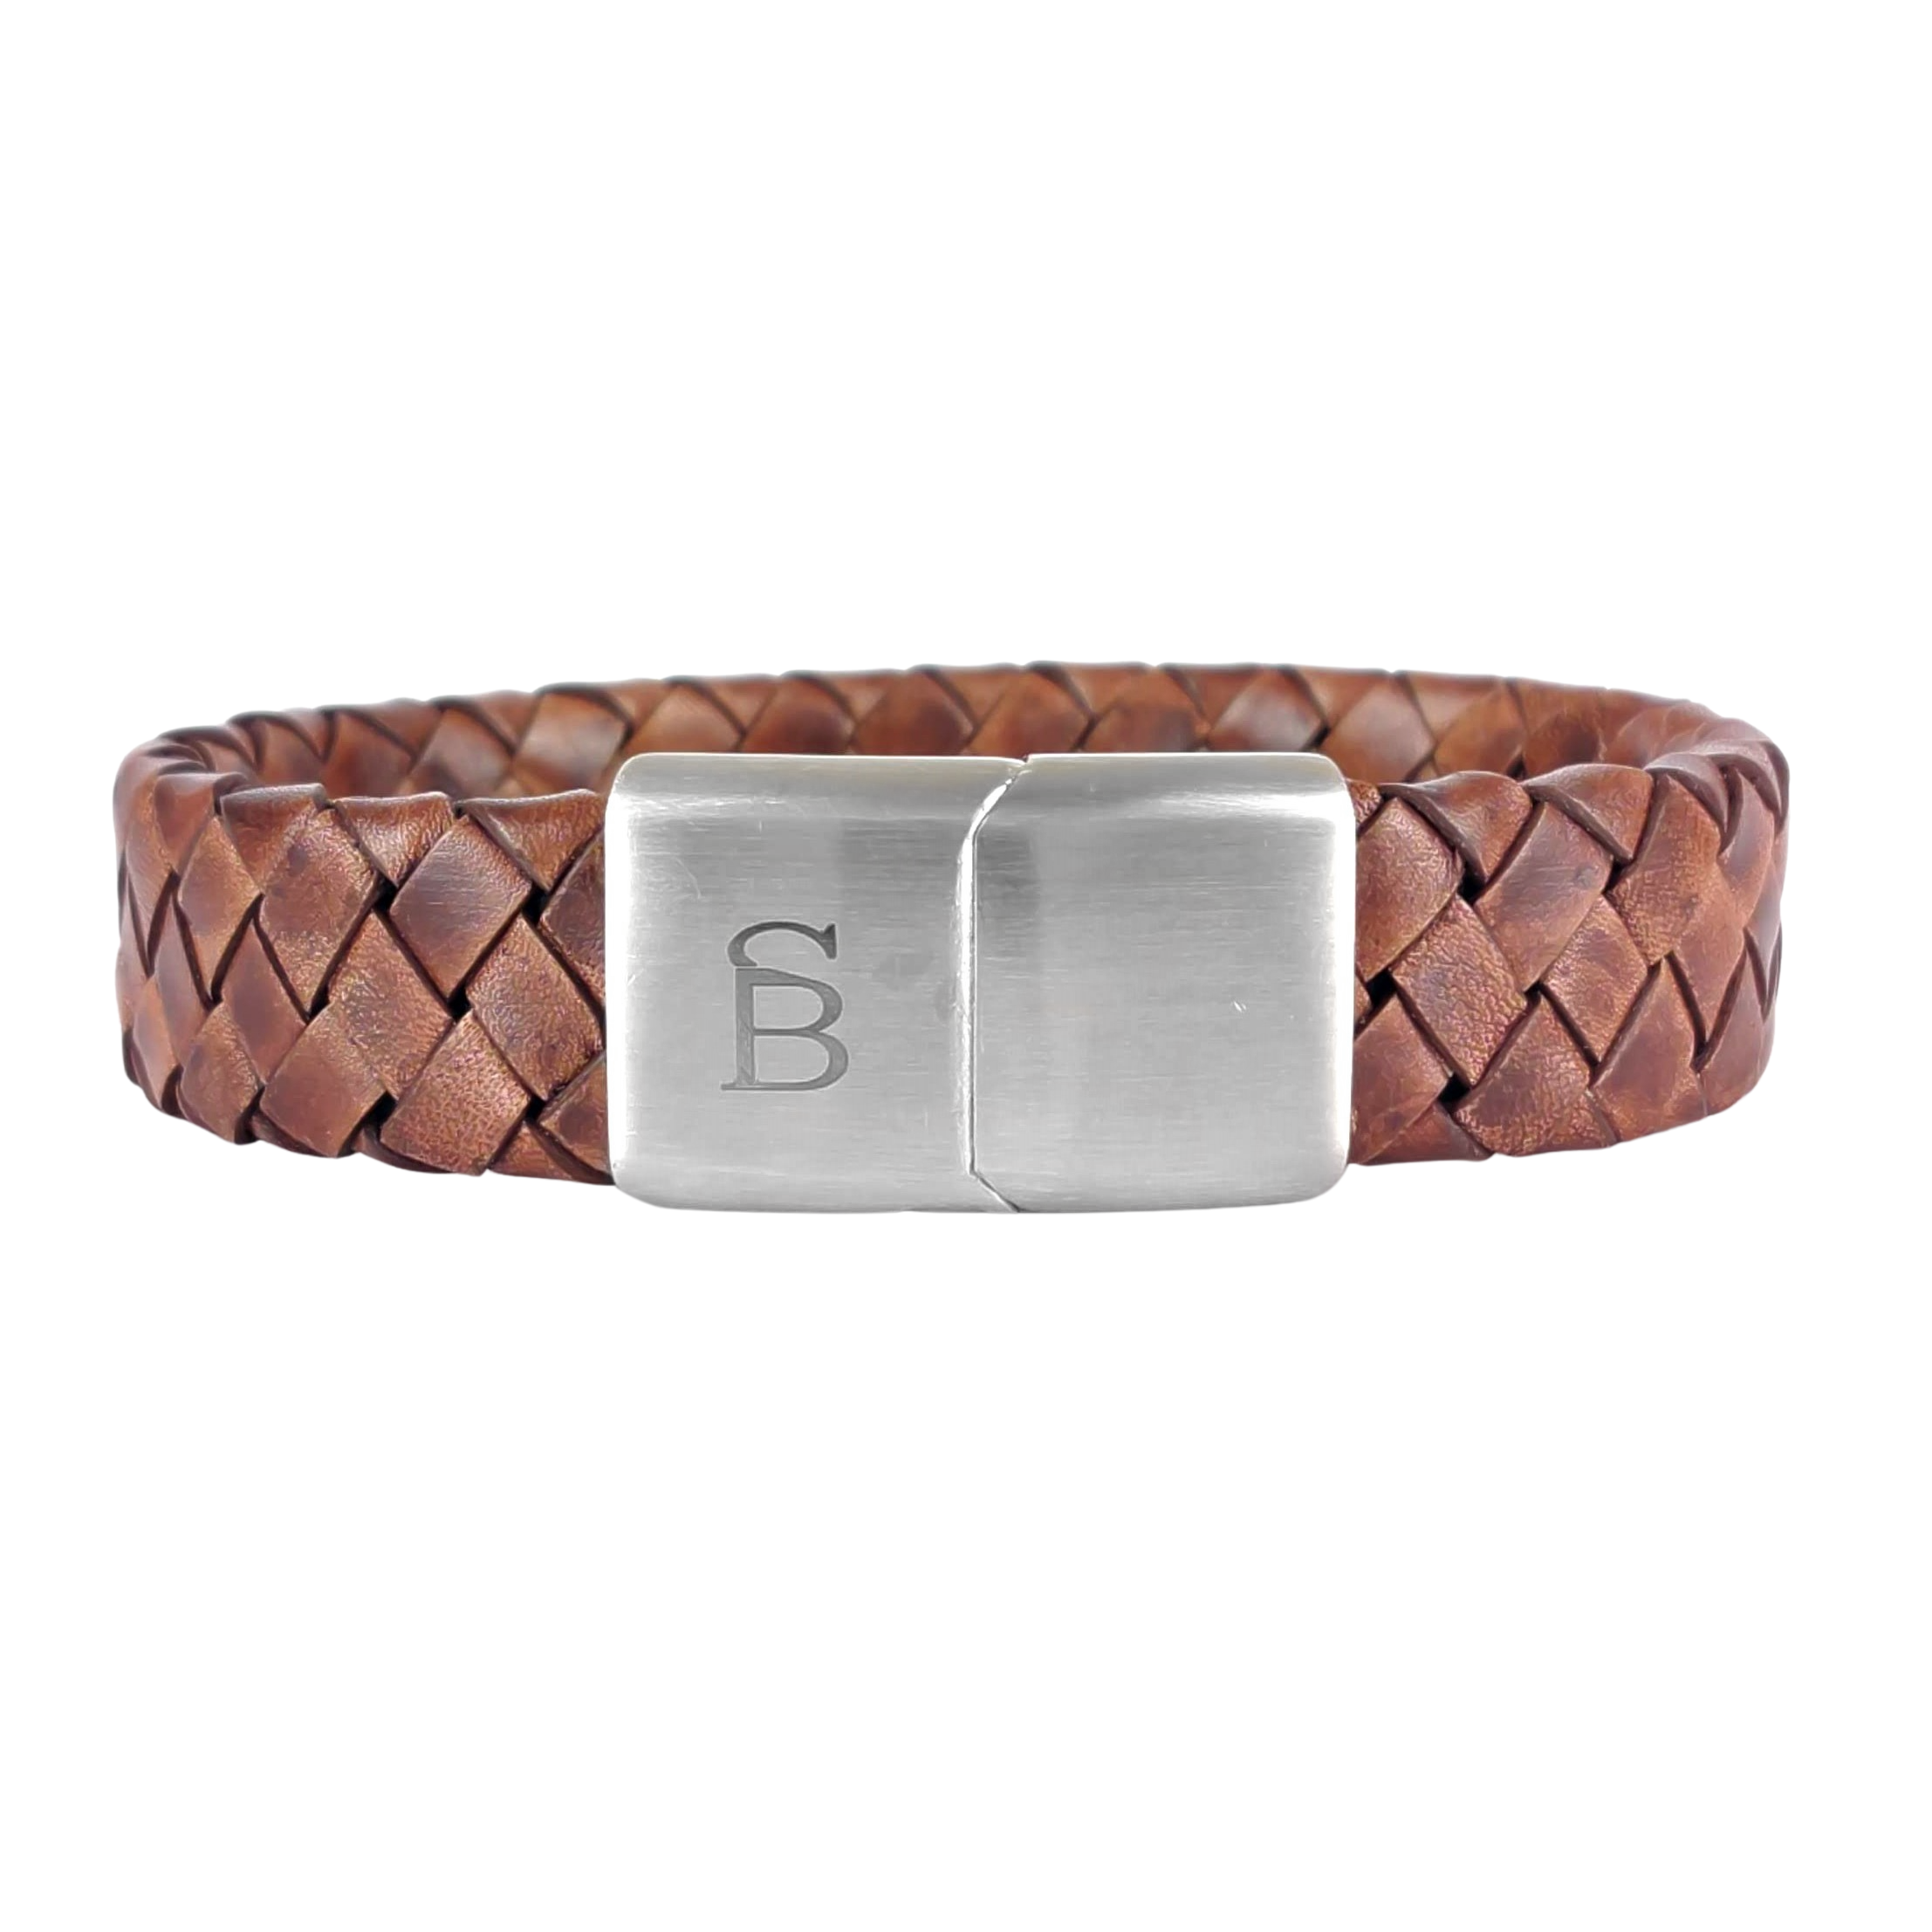 Steel & Barnett - Leather Bracelet Preston - Caramel